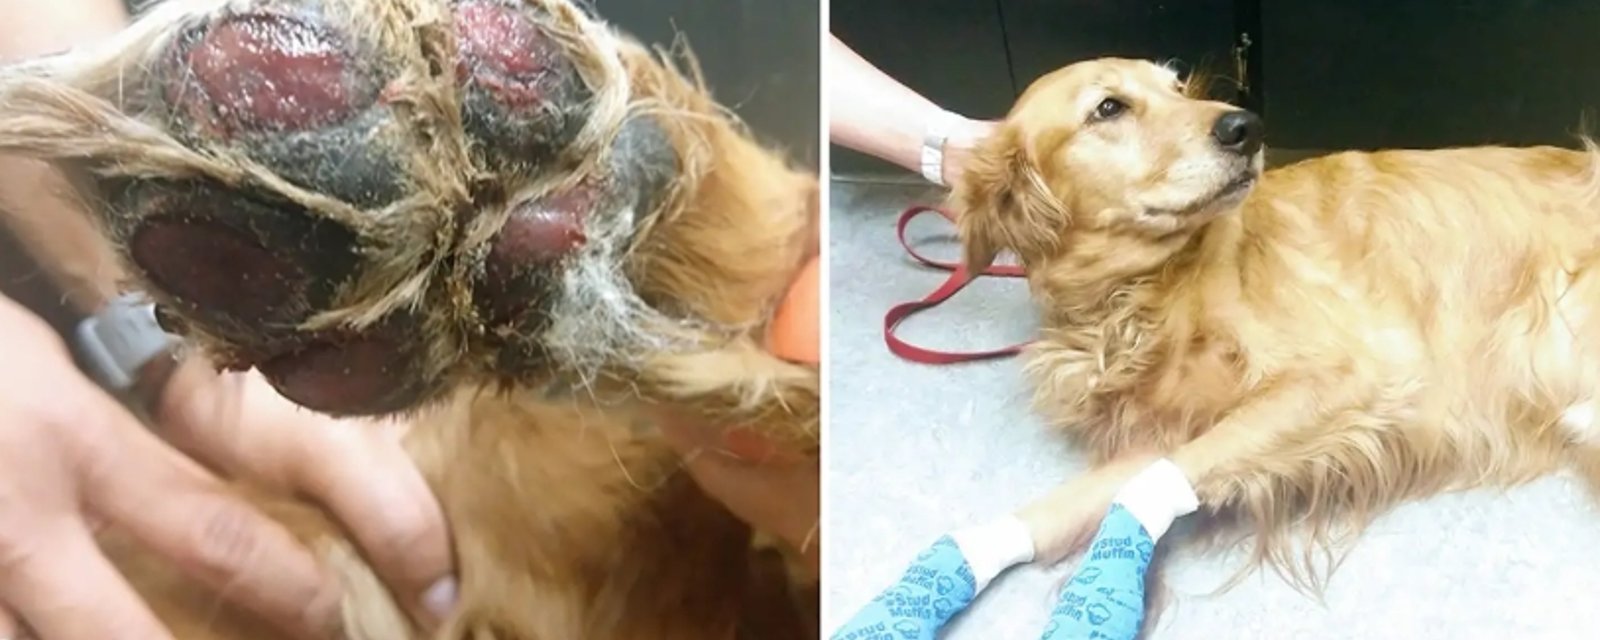 CANICULE: Un vétérinaire explique le danger que représente un trottoir brûlant pour les pattes de votre chien